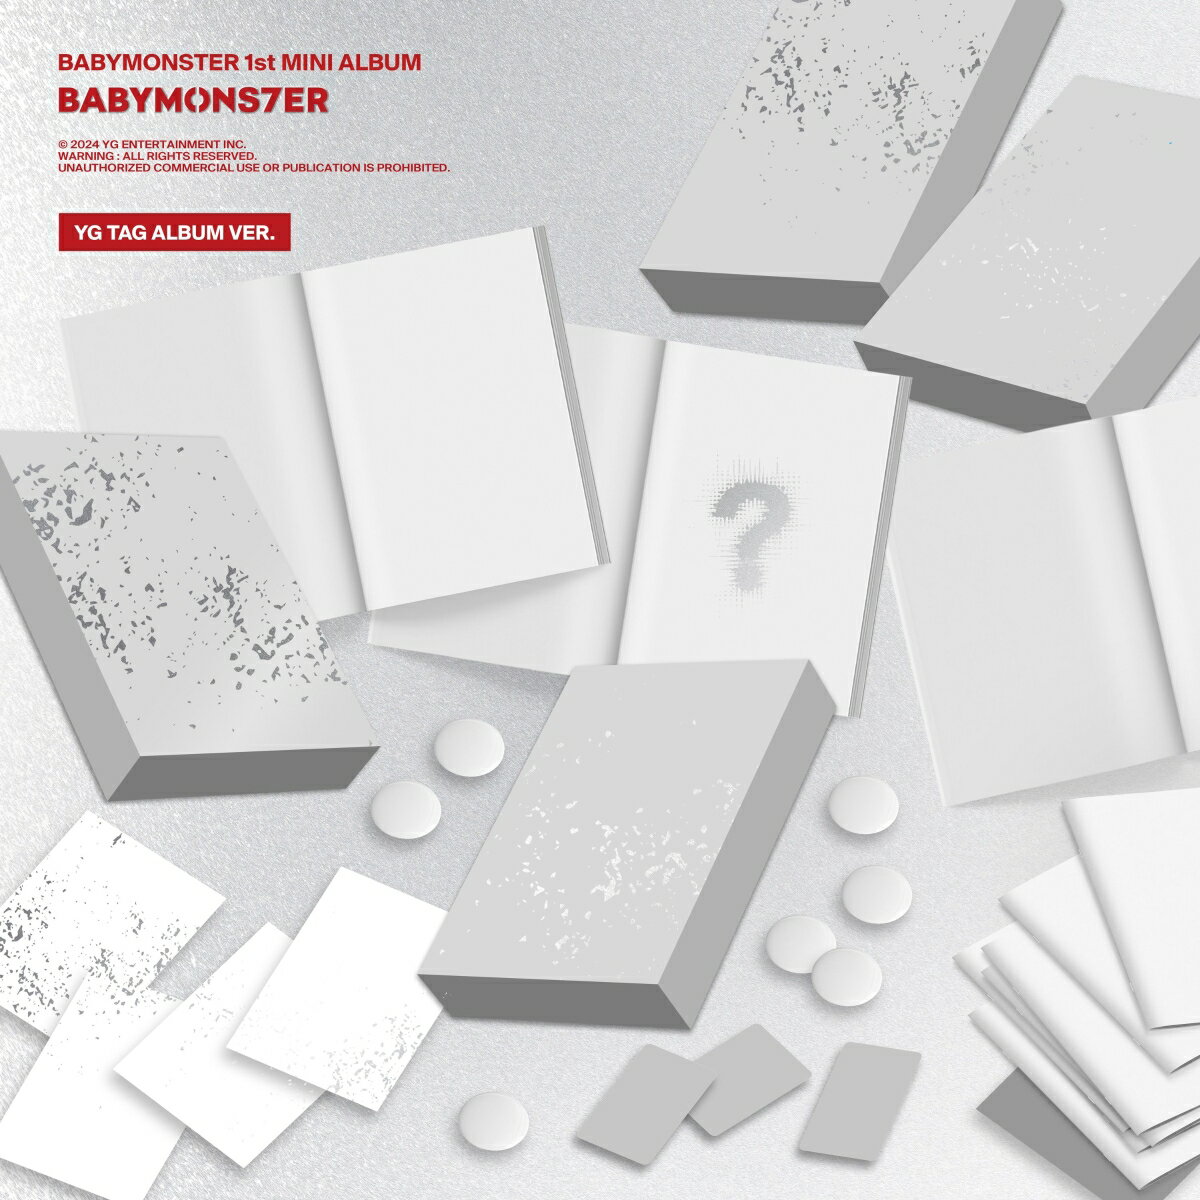 【楽天ブックス限定先着特典】【輸入盤】BABYMONSTER 1st MINI ALBUM [BABYMONS7ER] YG TAG ALBUM VER. (RAMI VER.)(オリジナルL判ブロマイド(Type-B絵柄 / 全7種からランダムで1枚))